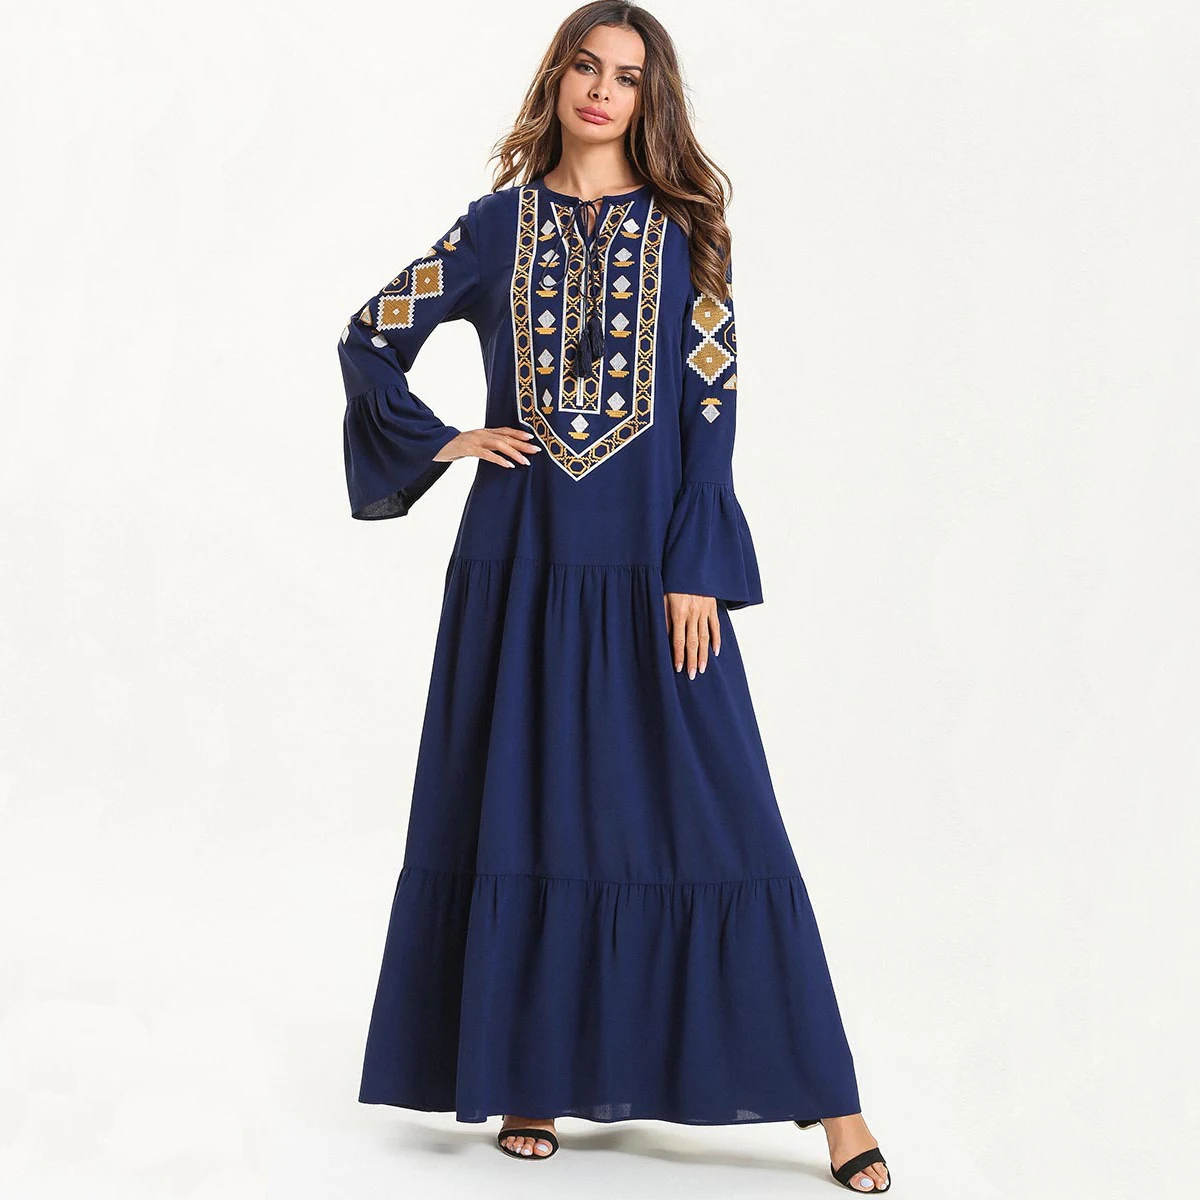 Фото 2019 Новое мусульманское платье женская мусульманская одежда марокканский кафтан